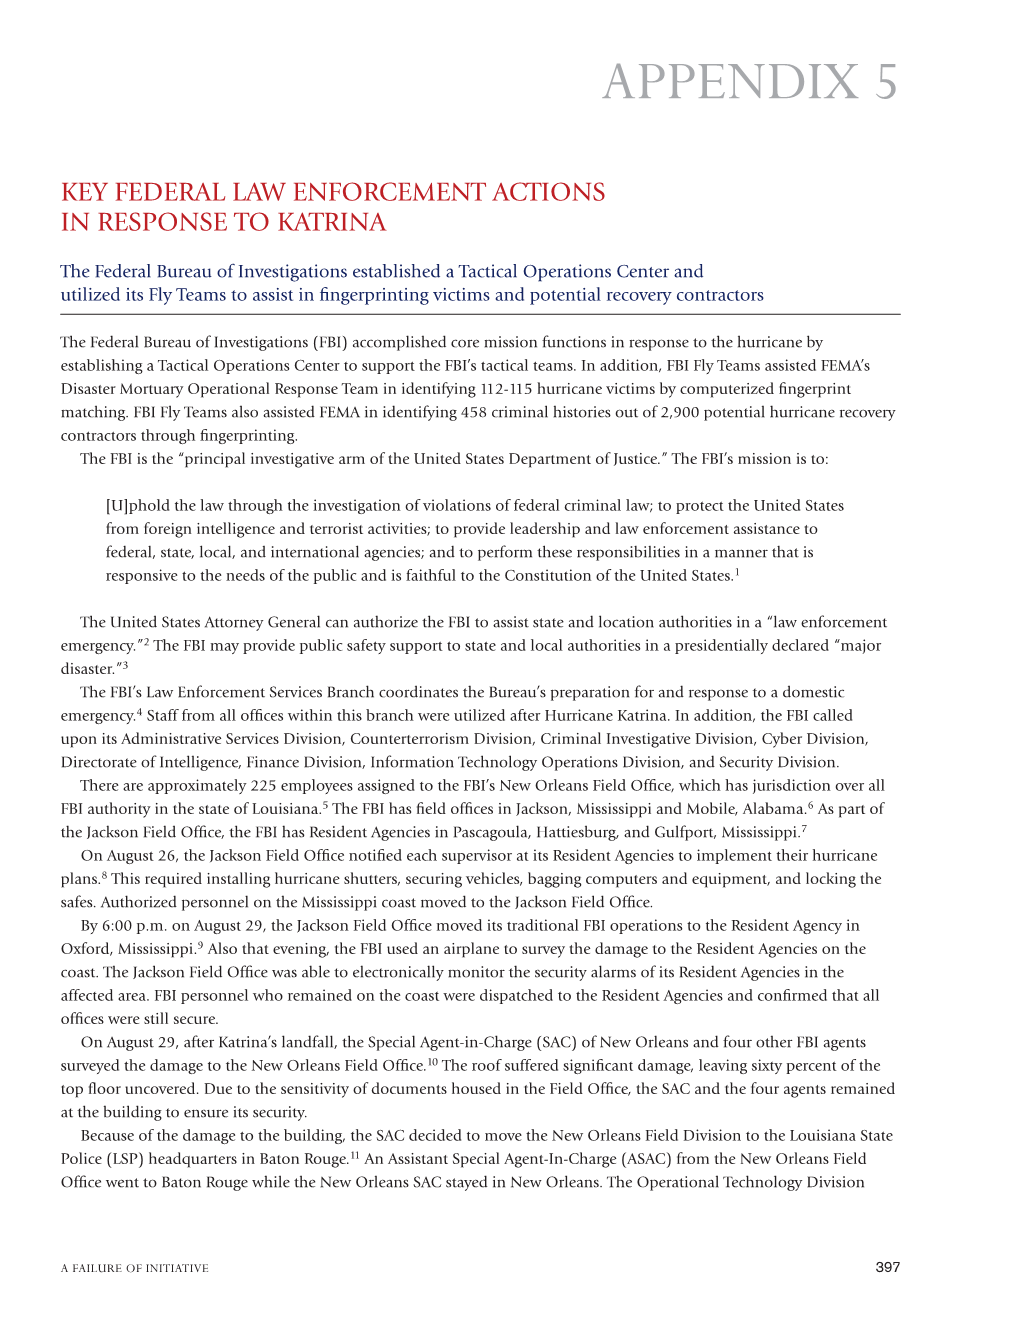 Appendix 5: Key Federal Law Enforcement Activities